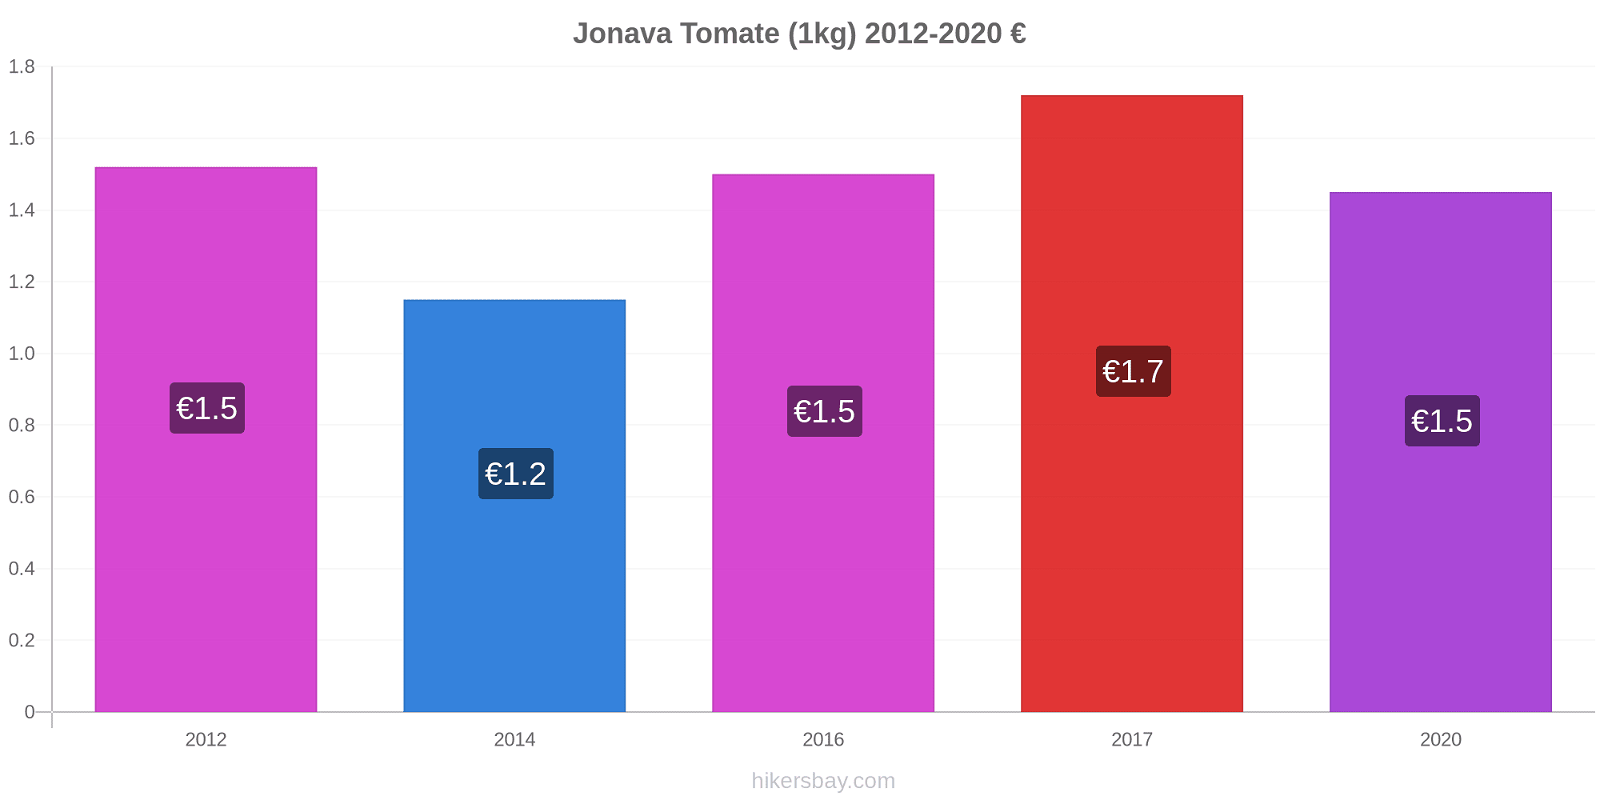 Jonava Preisänderungen Tomaten (1kg) hikersbay.com